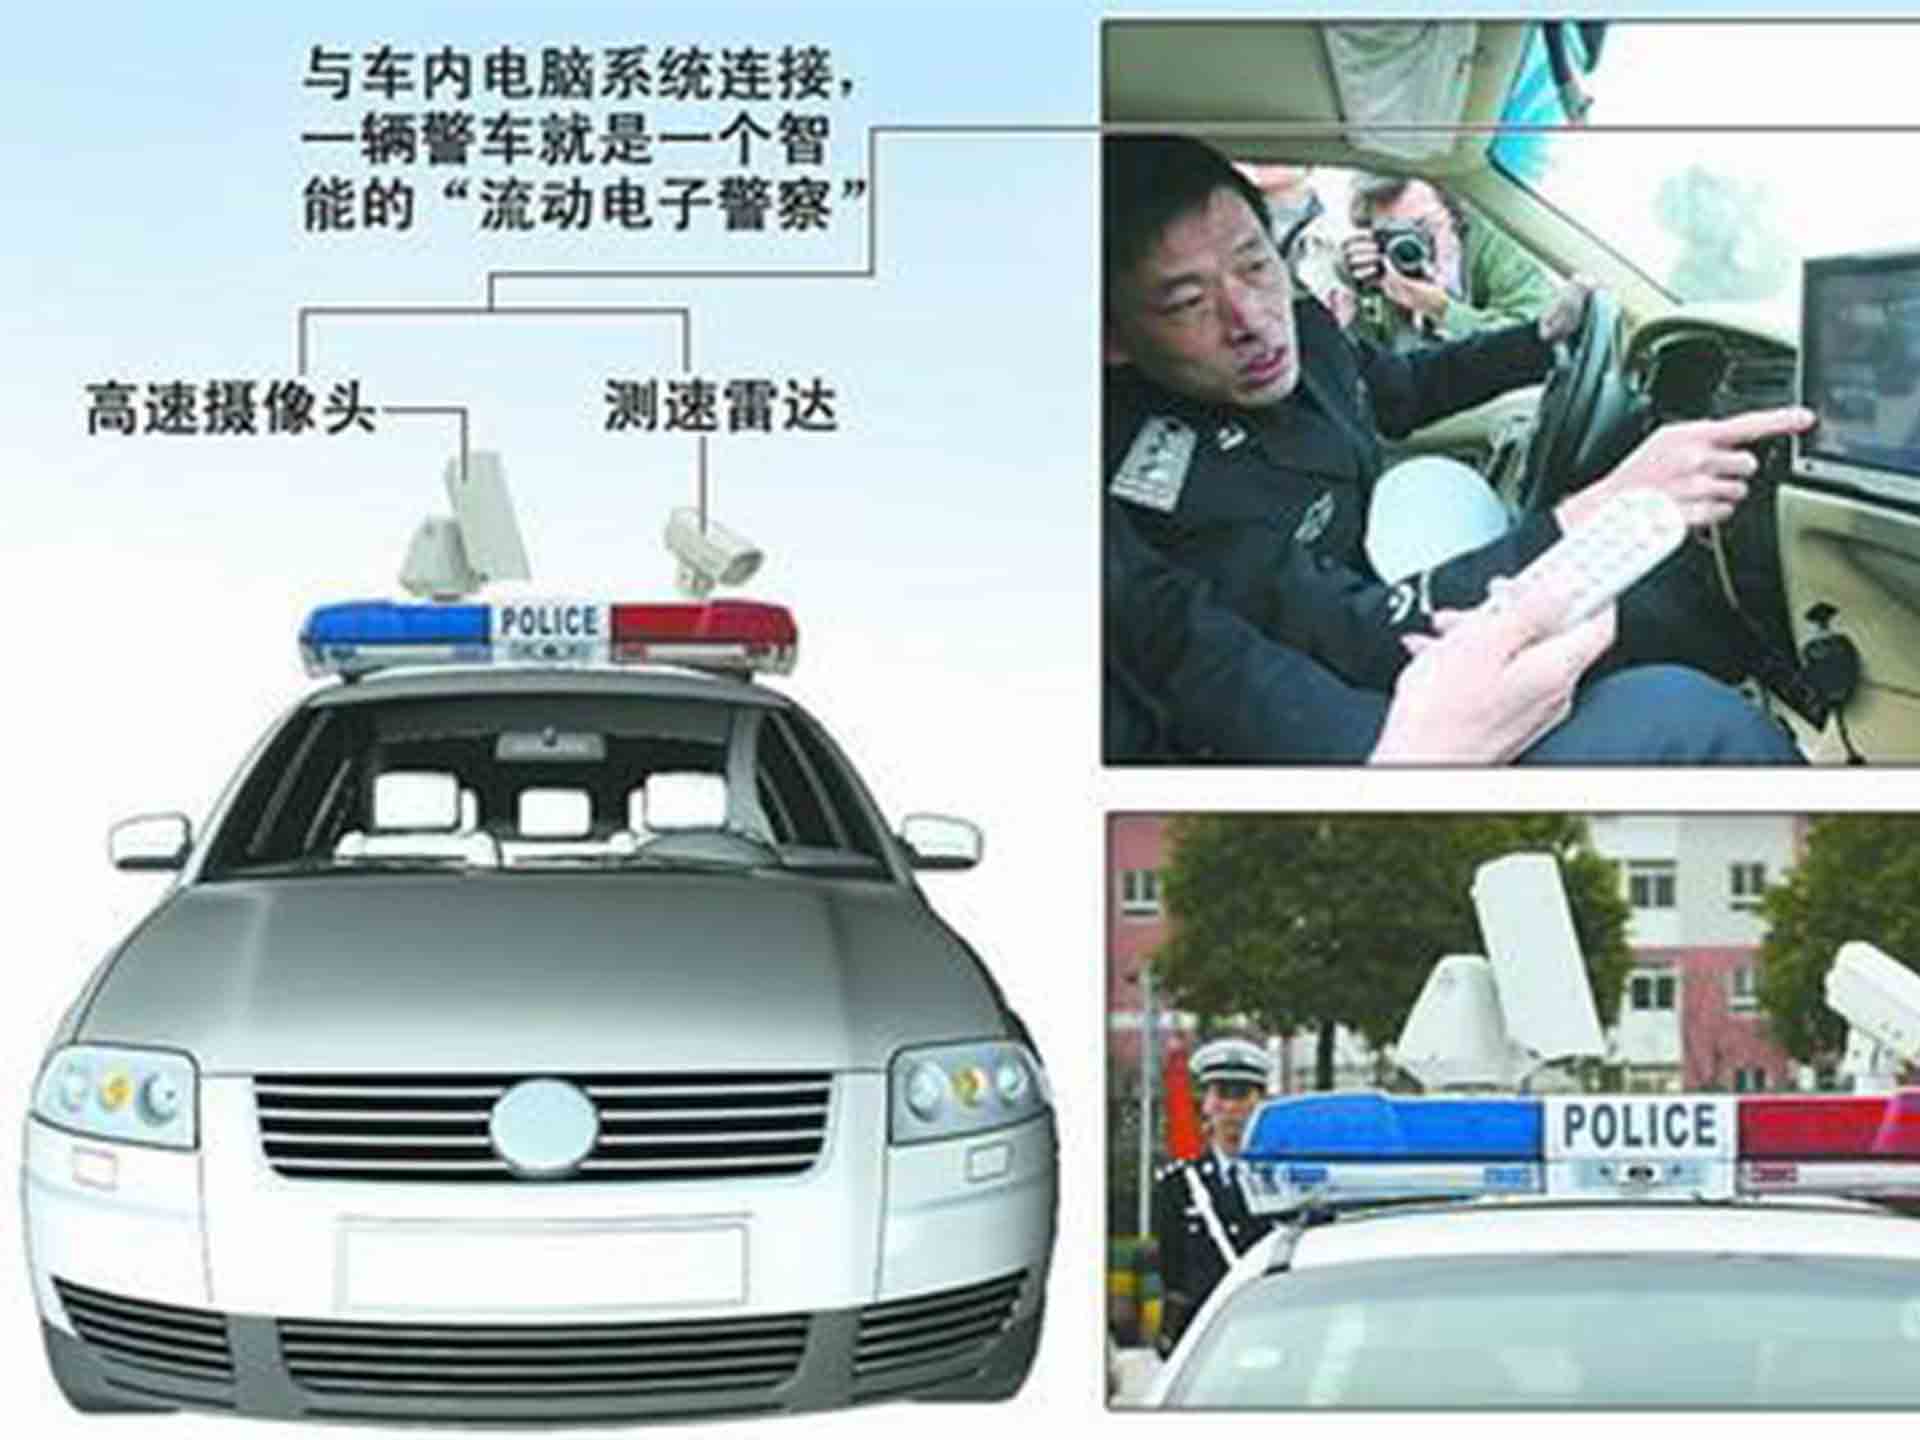 车牌识别系统将“搭上”新能源“智慧”警车